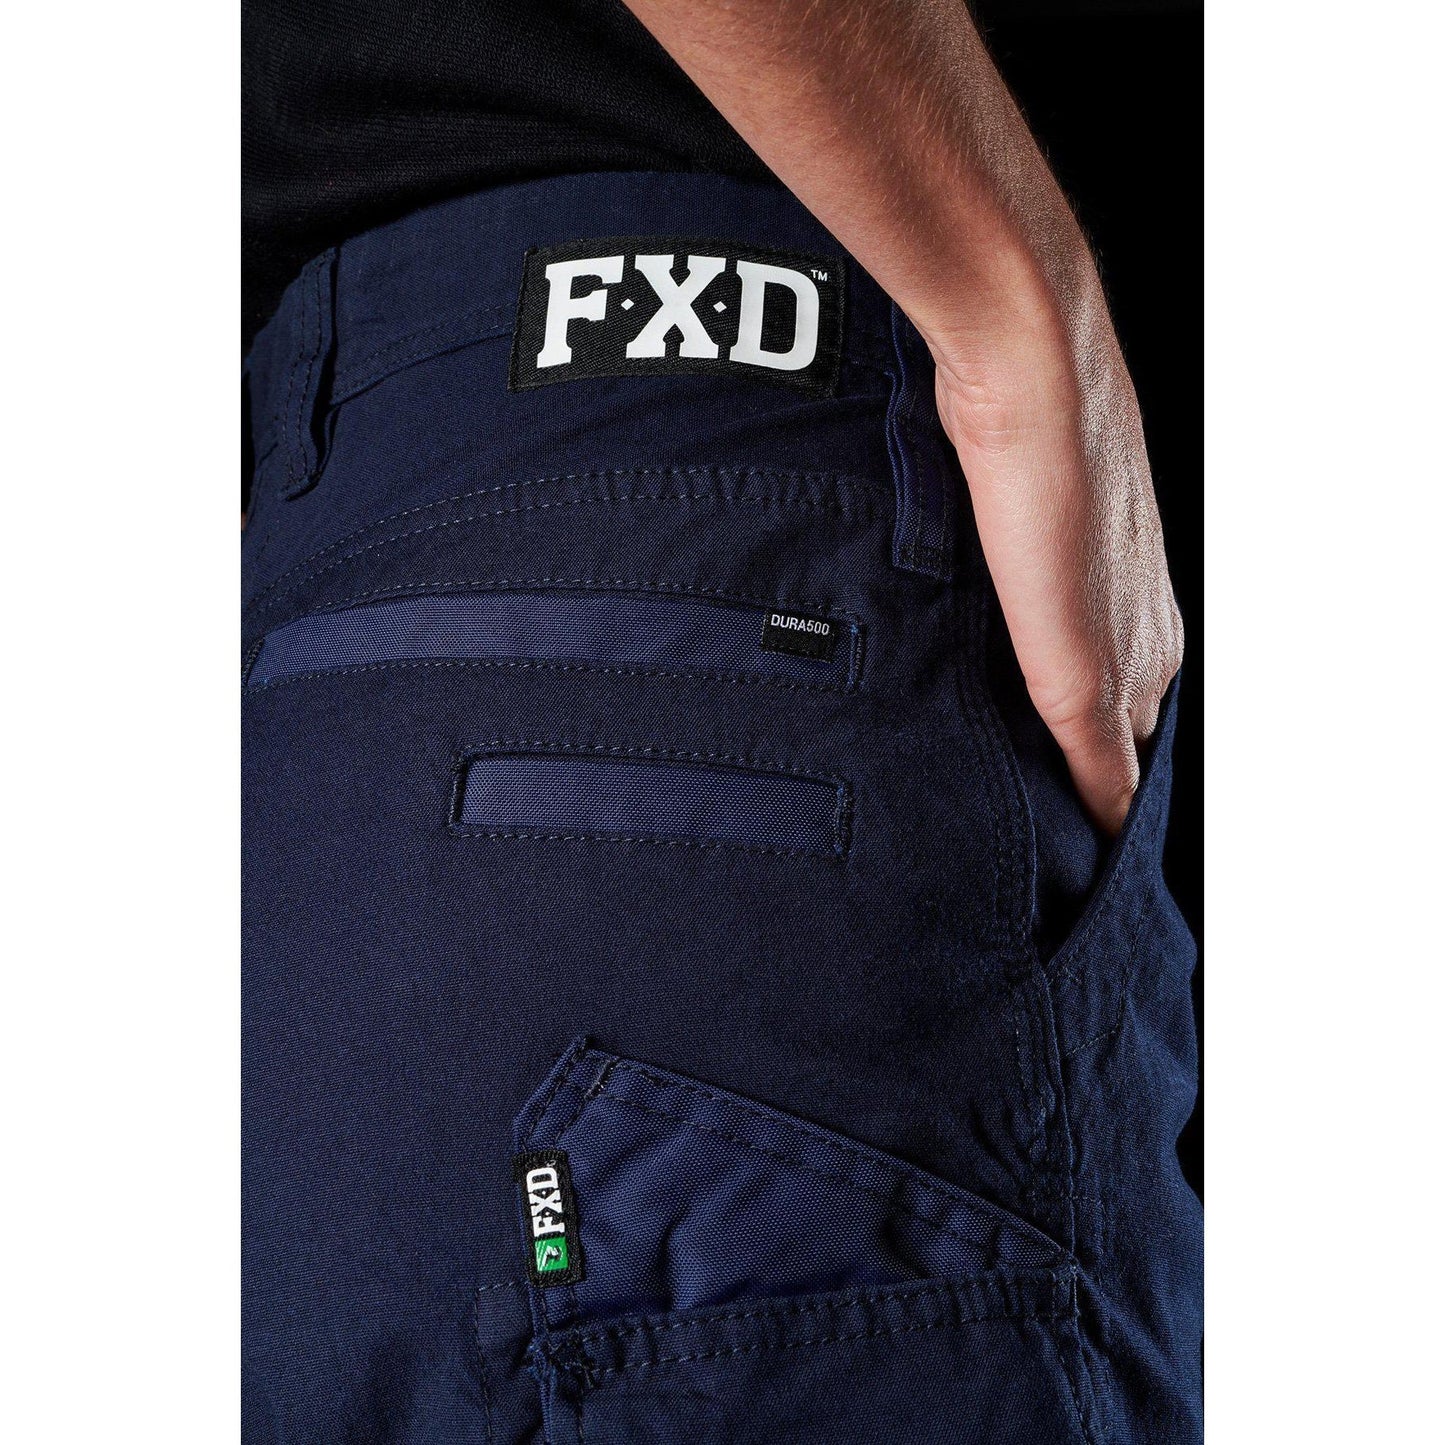 FXD Womens Stretch Shorts - WS-3W | Womens Workwear